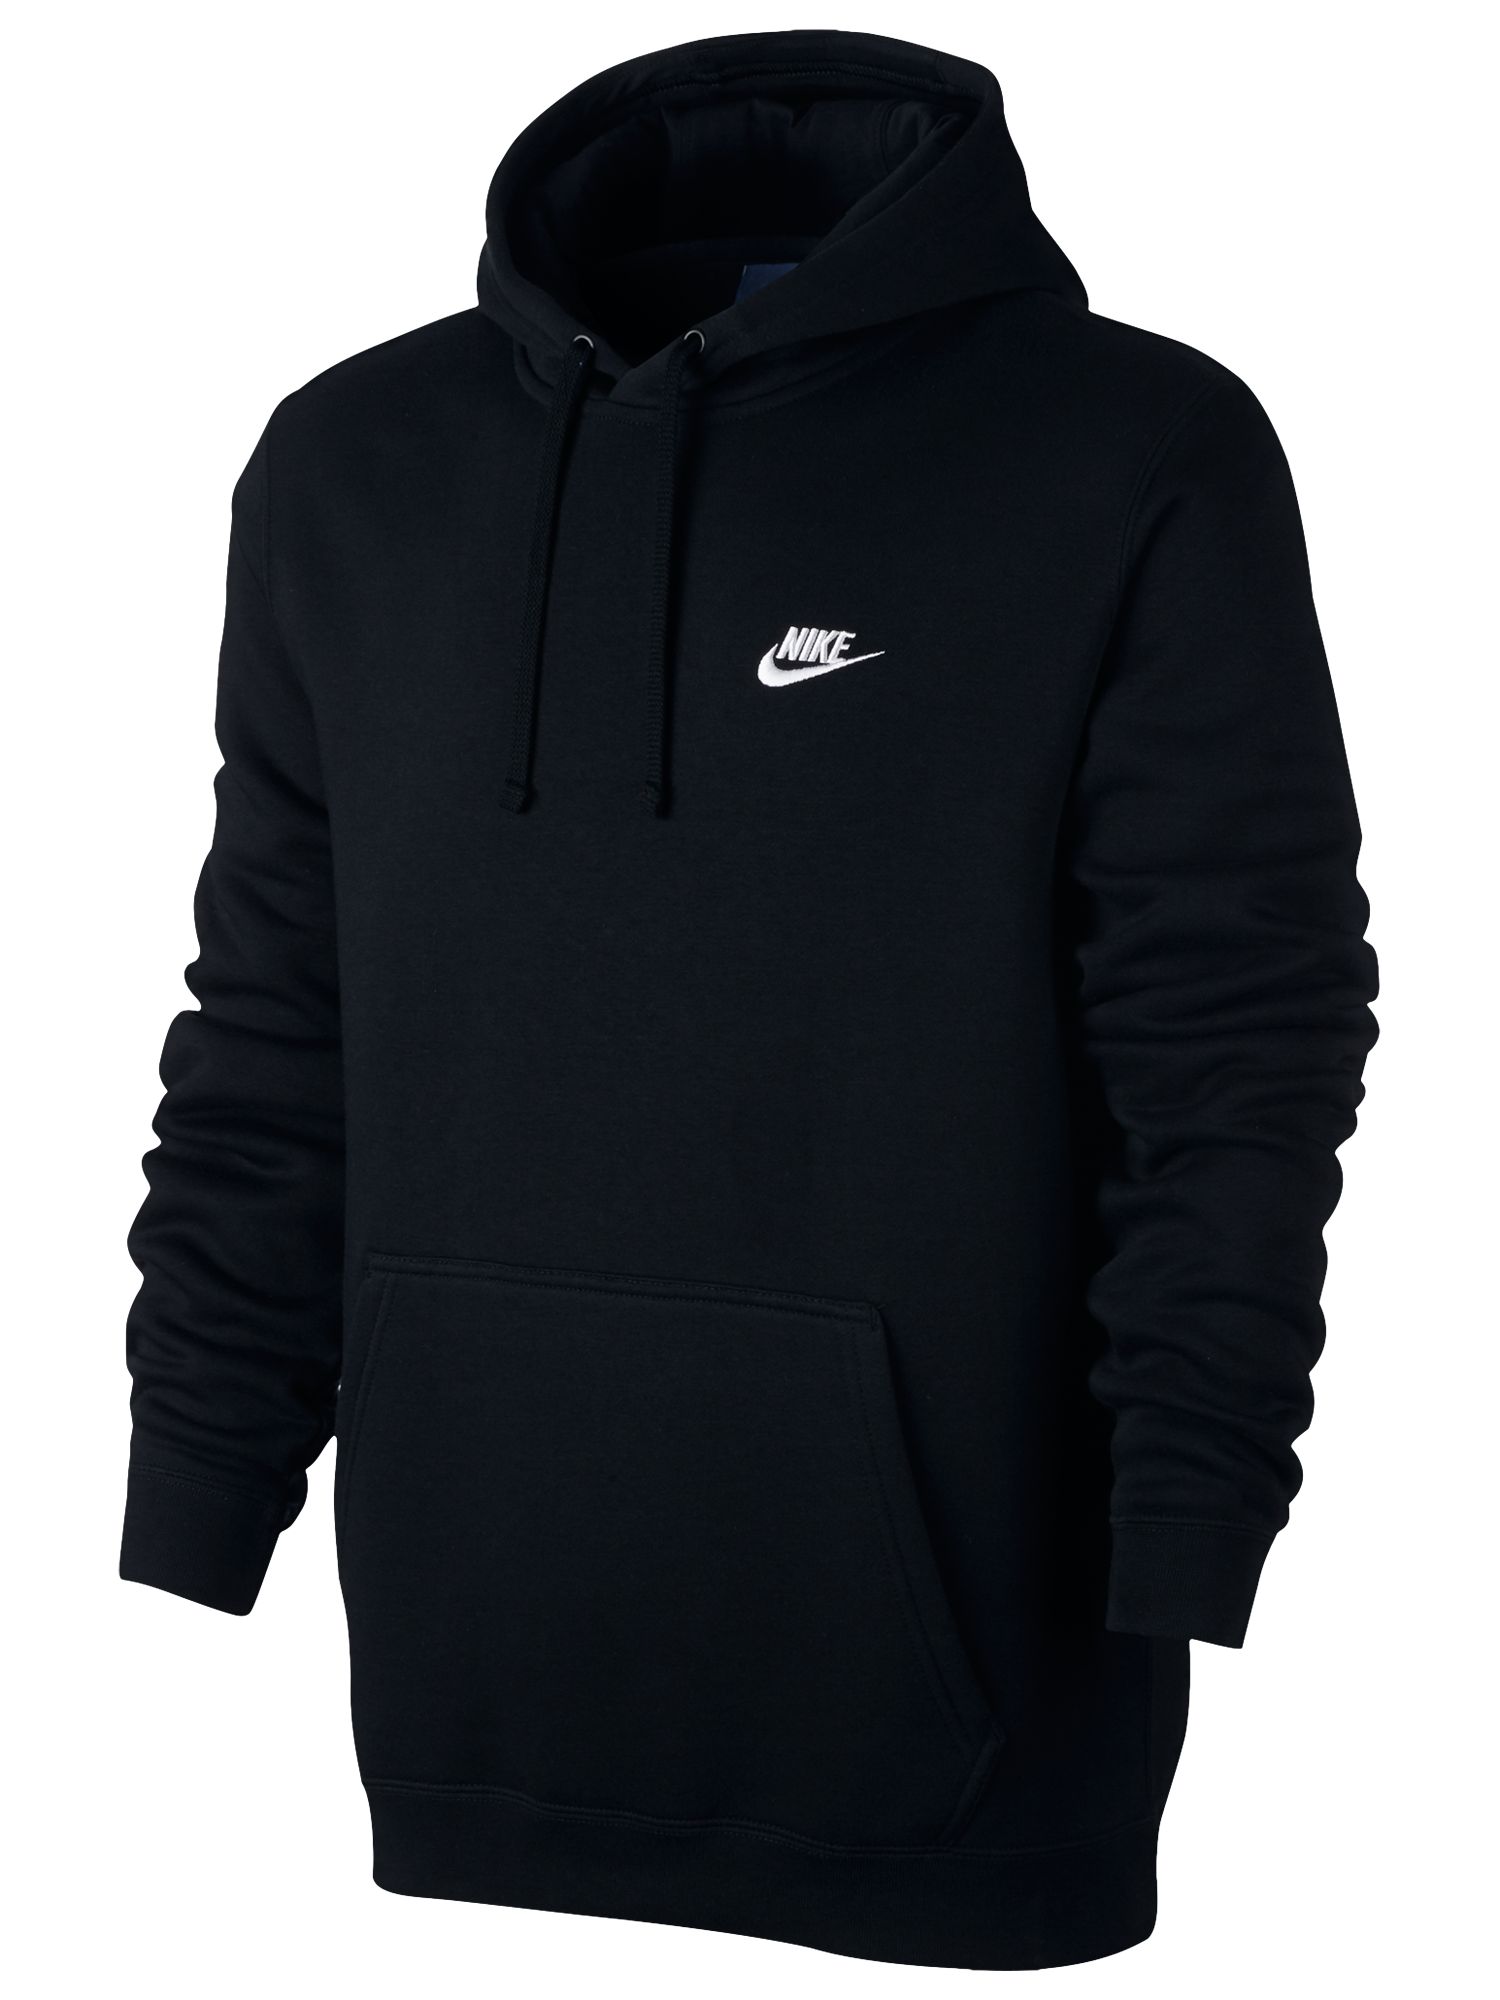 Nike Sportswear Hoodie, Black